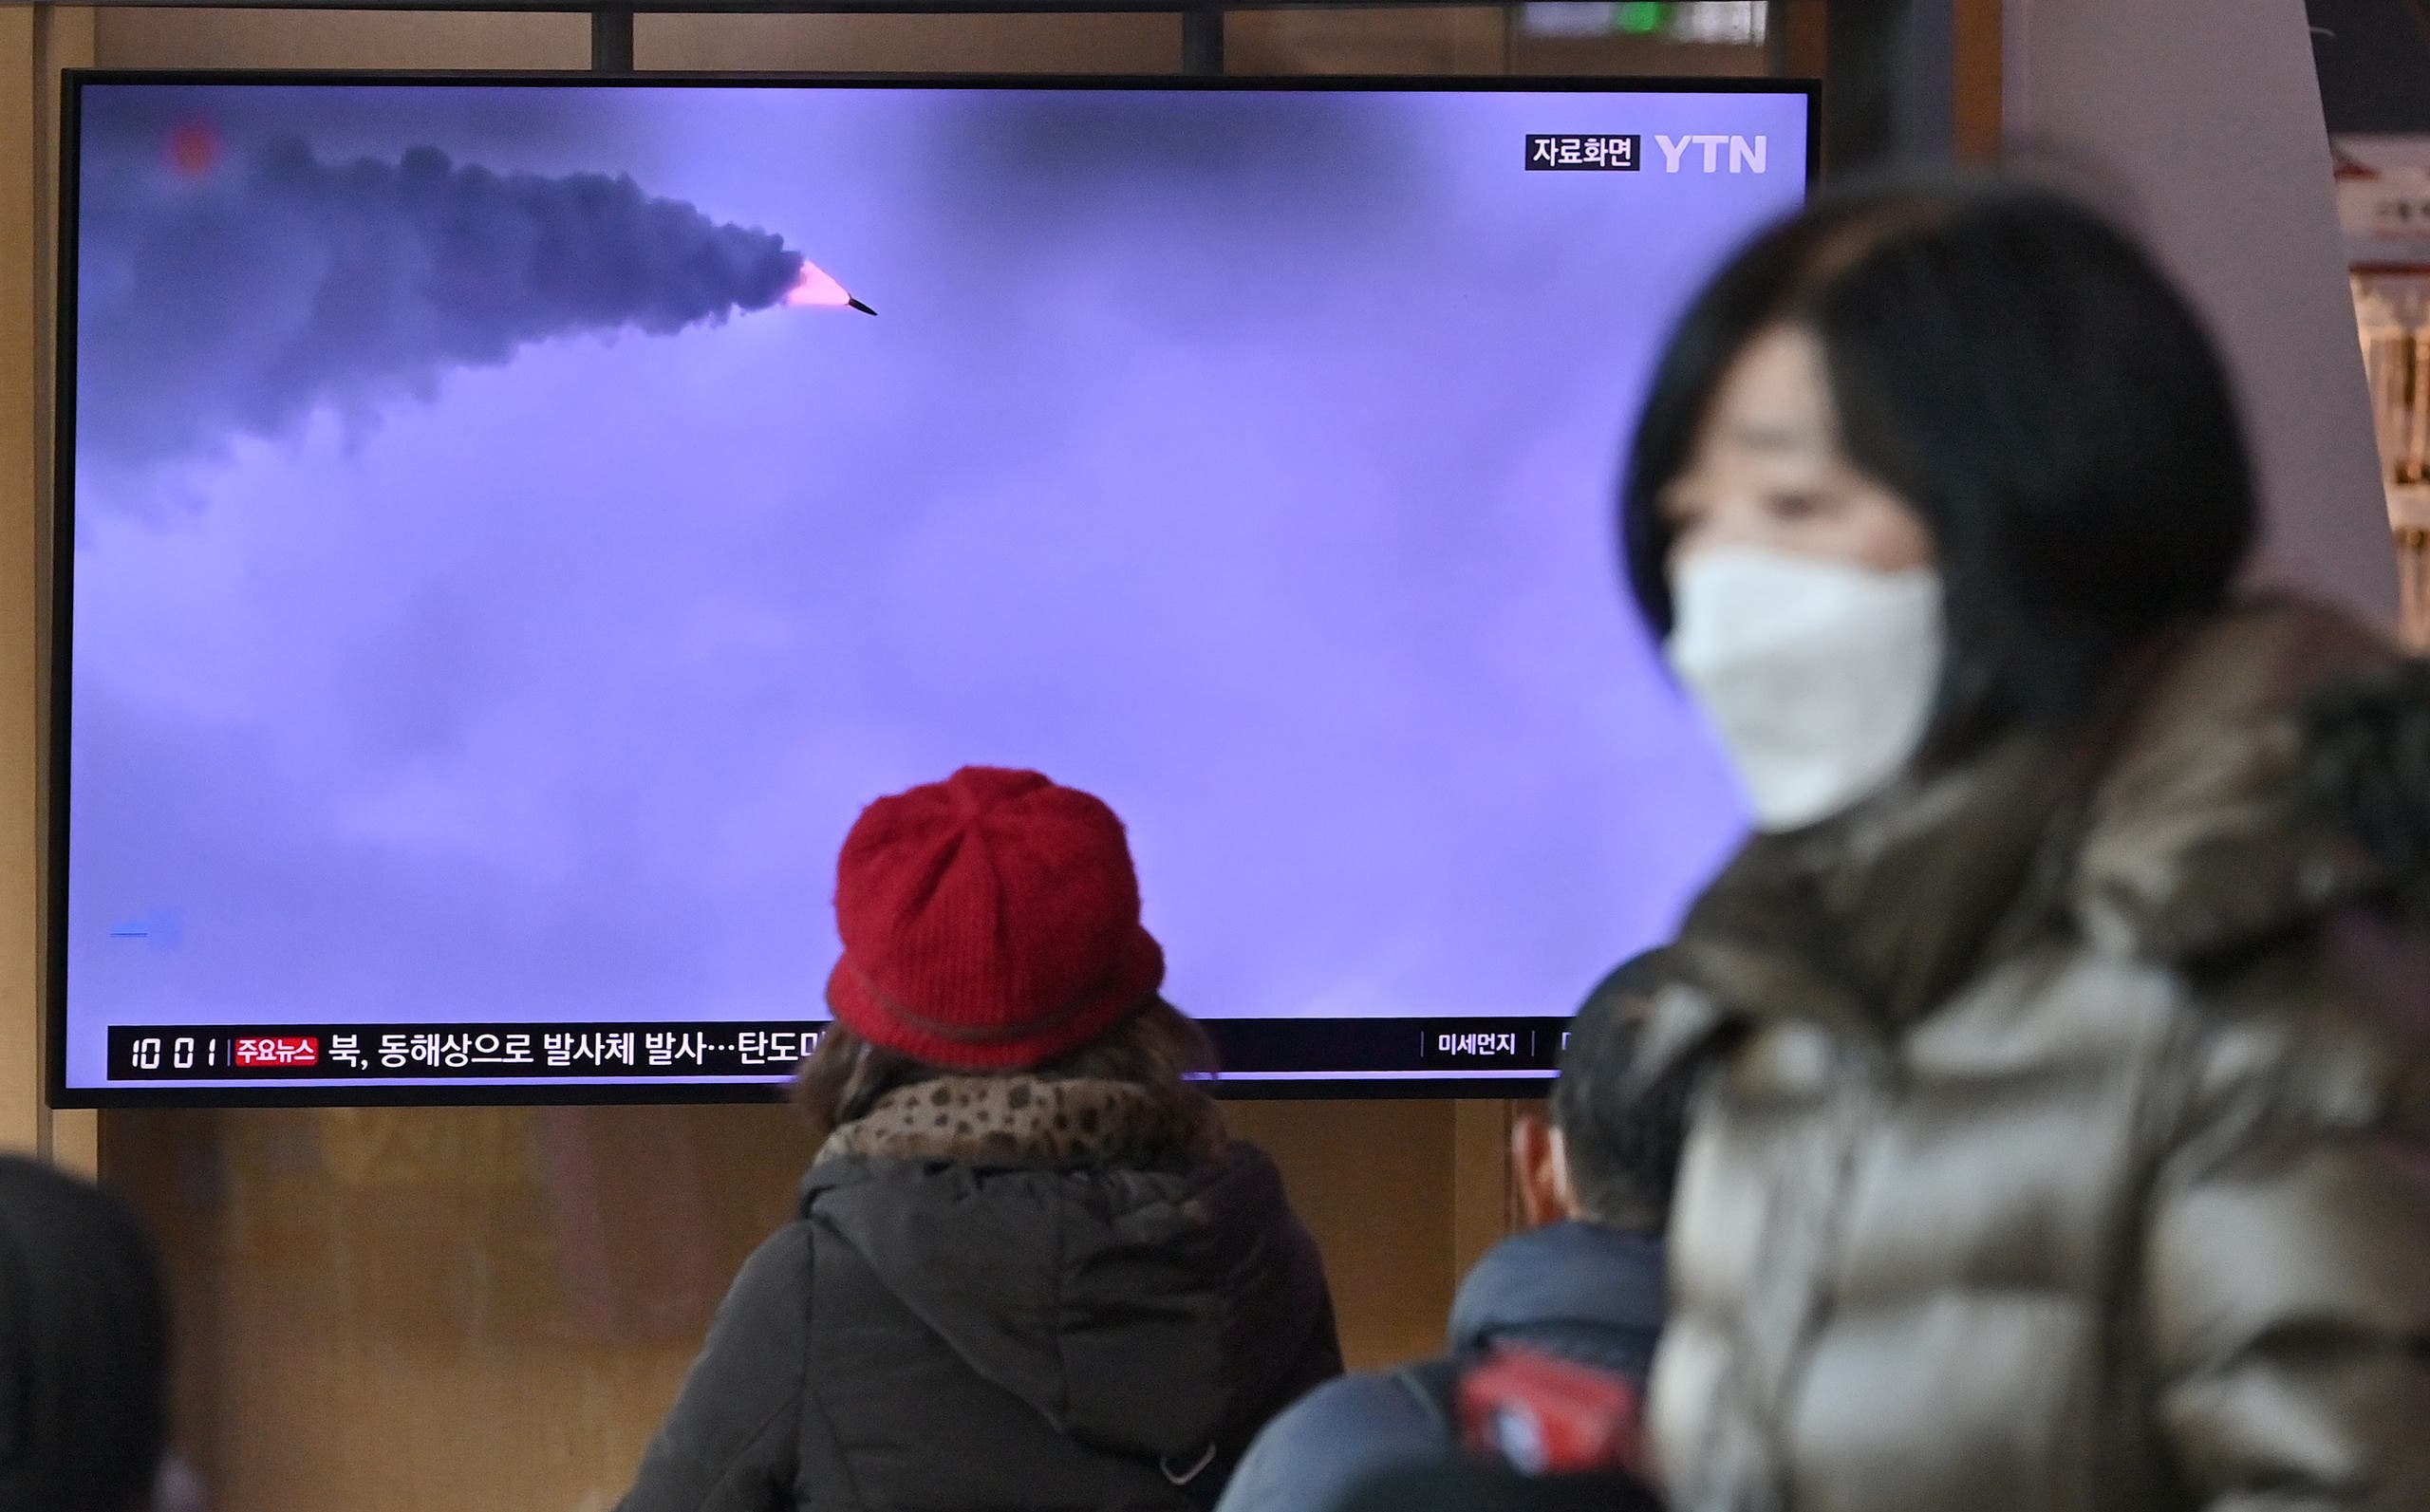 شاشة في محطة قطار في سيول تعرض الاختبار الذي اجرته كوريا الشمالية أمس